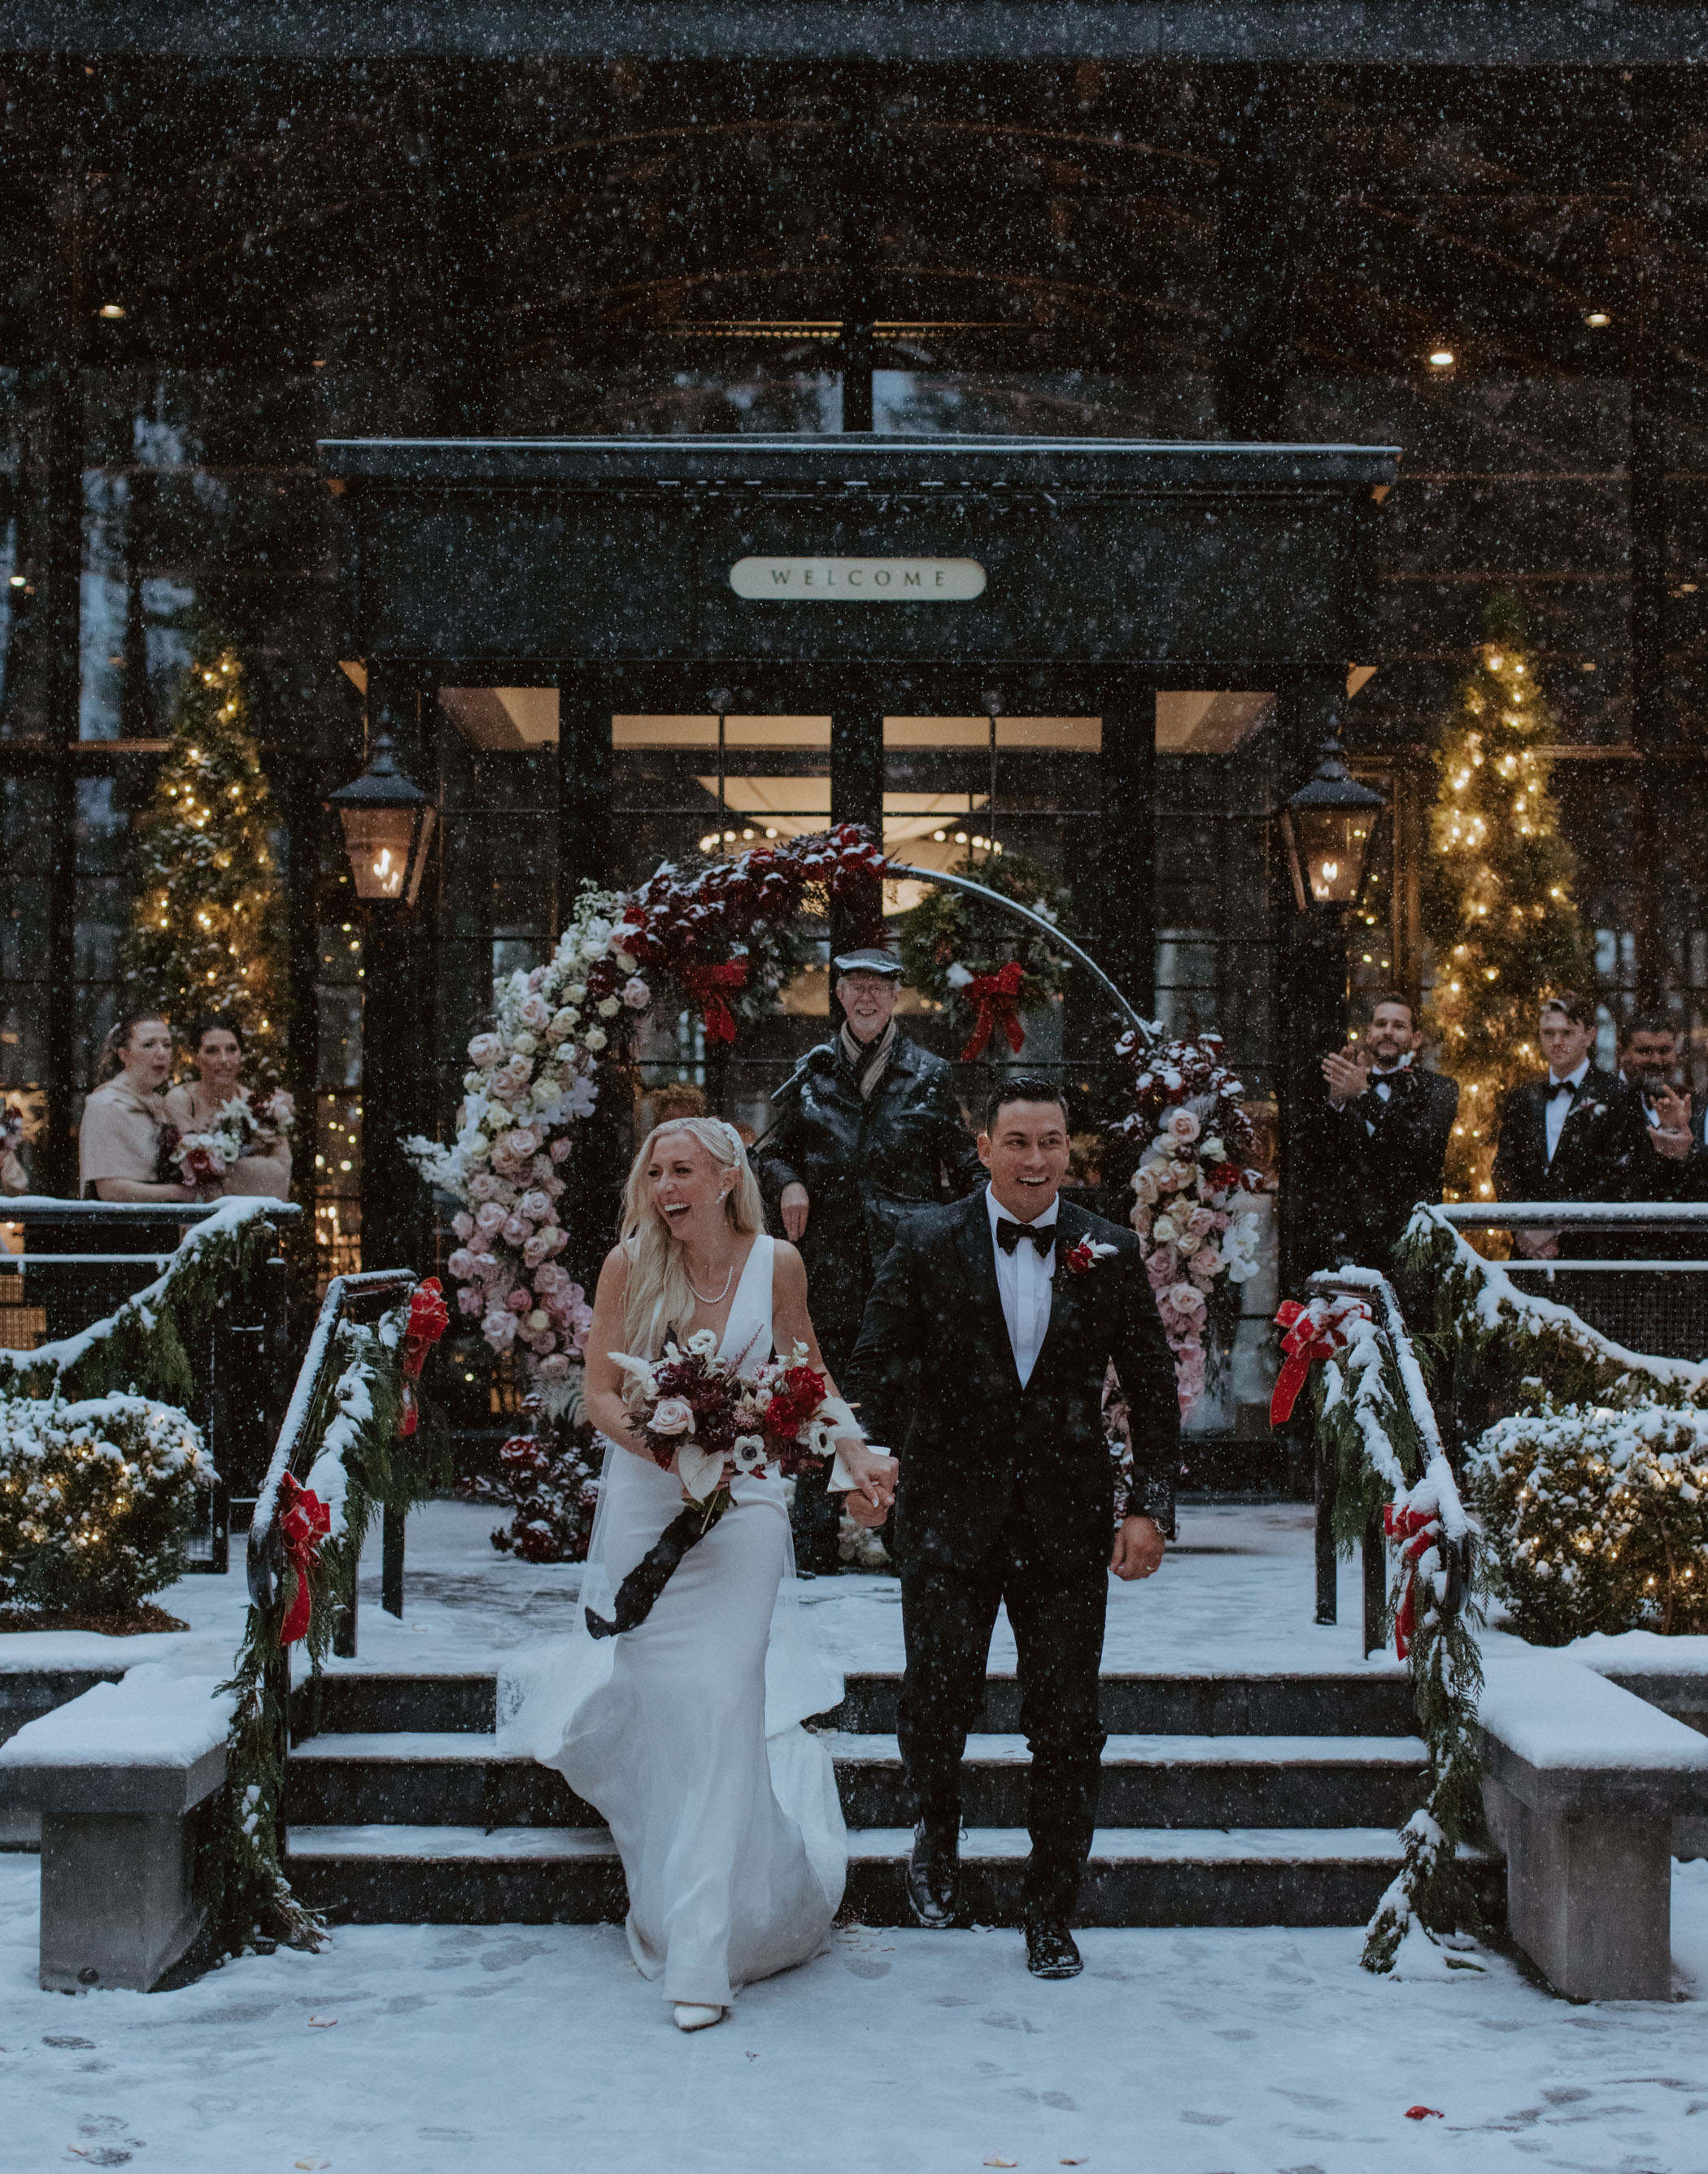 Wedding ceremony in the snow